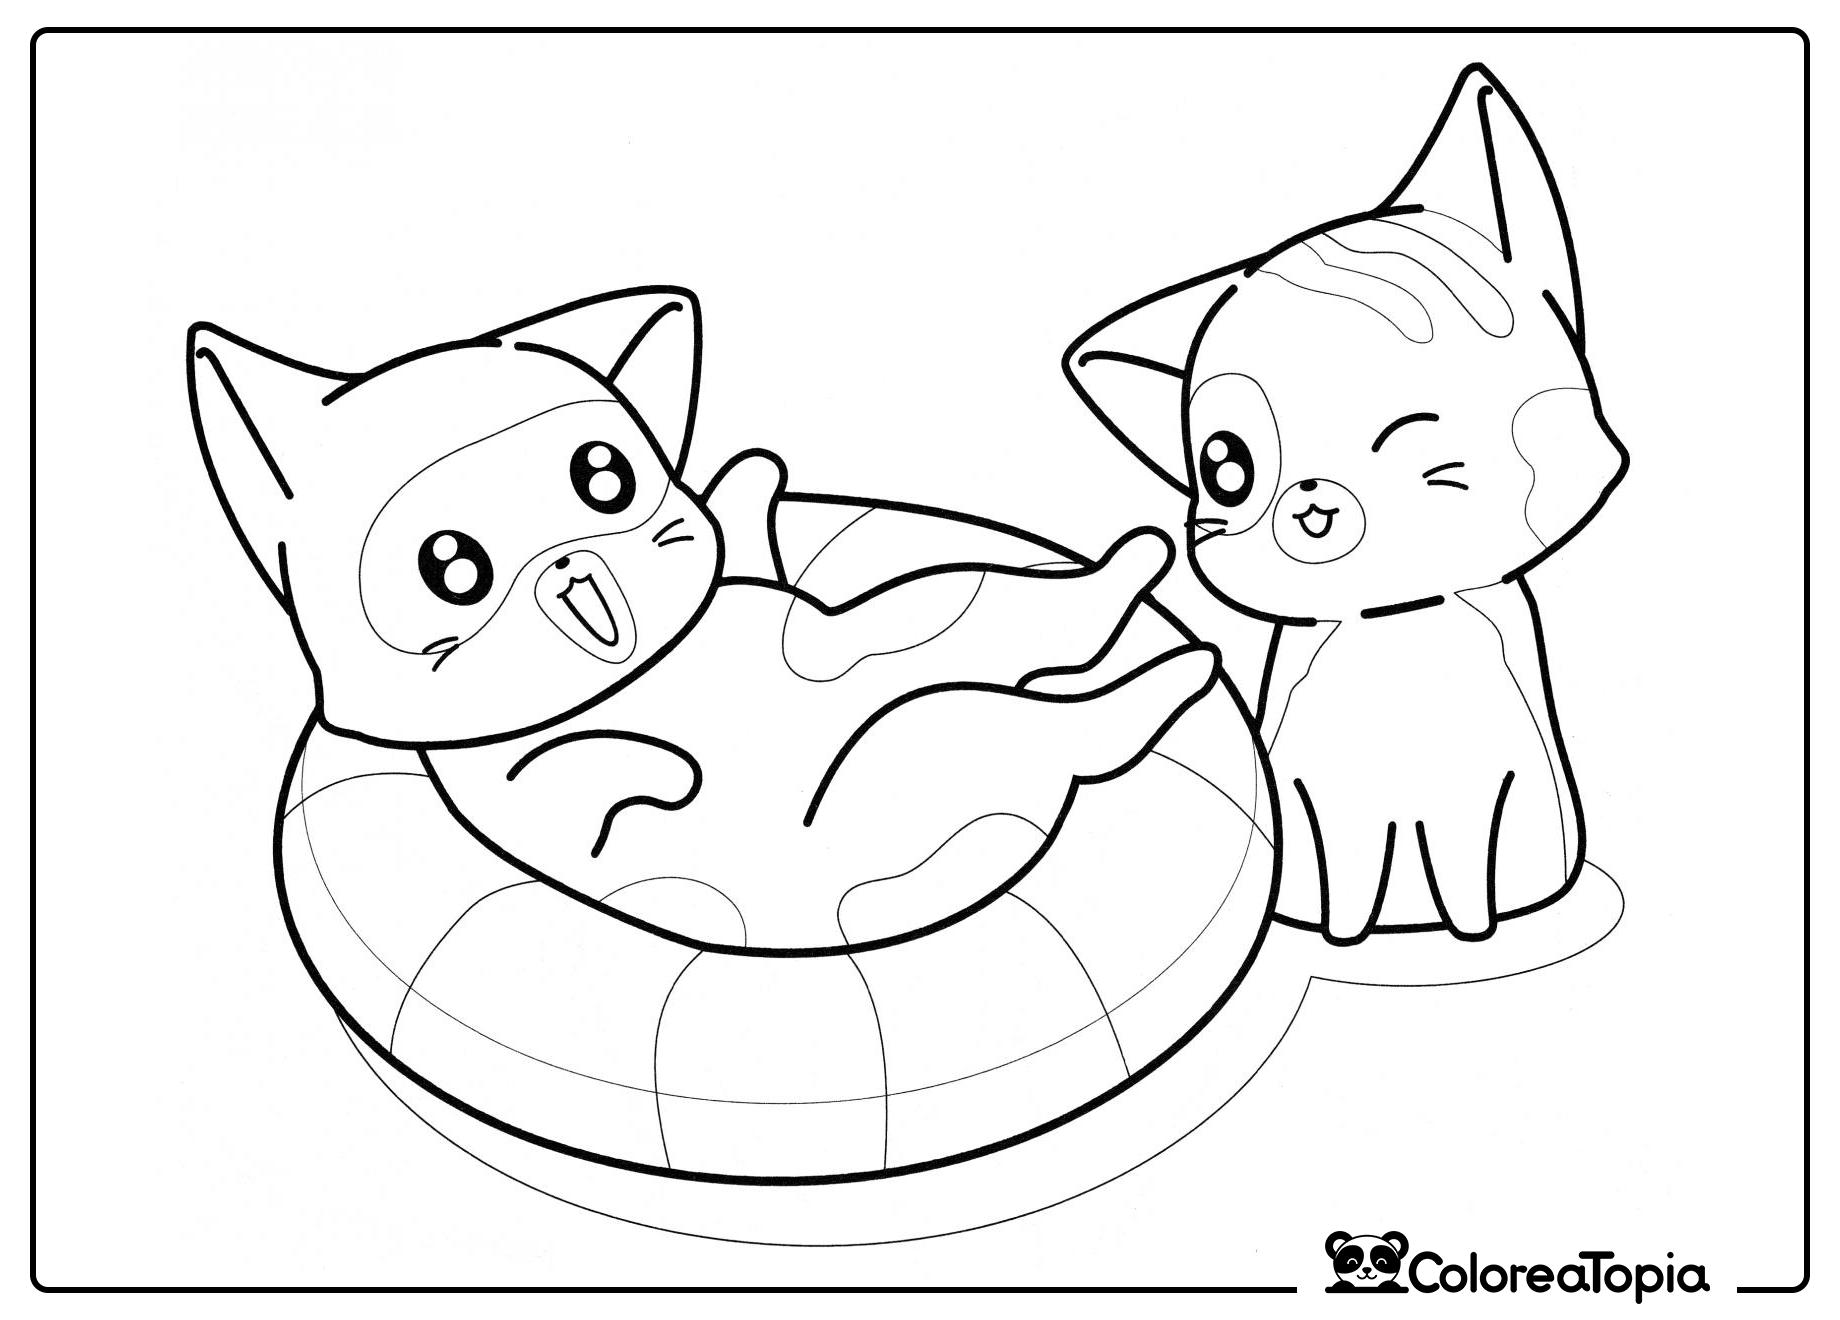 Gatitos y círculo marino - dibujo para colorear